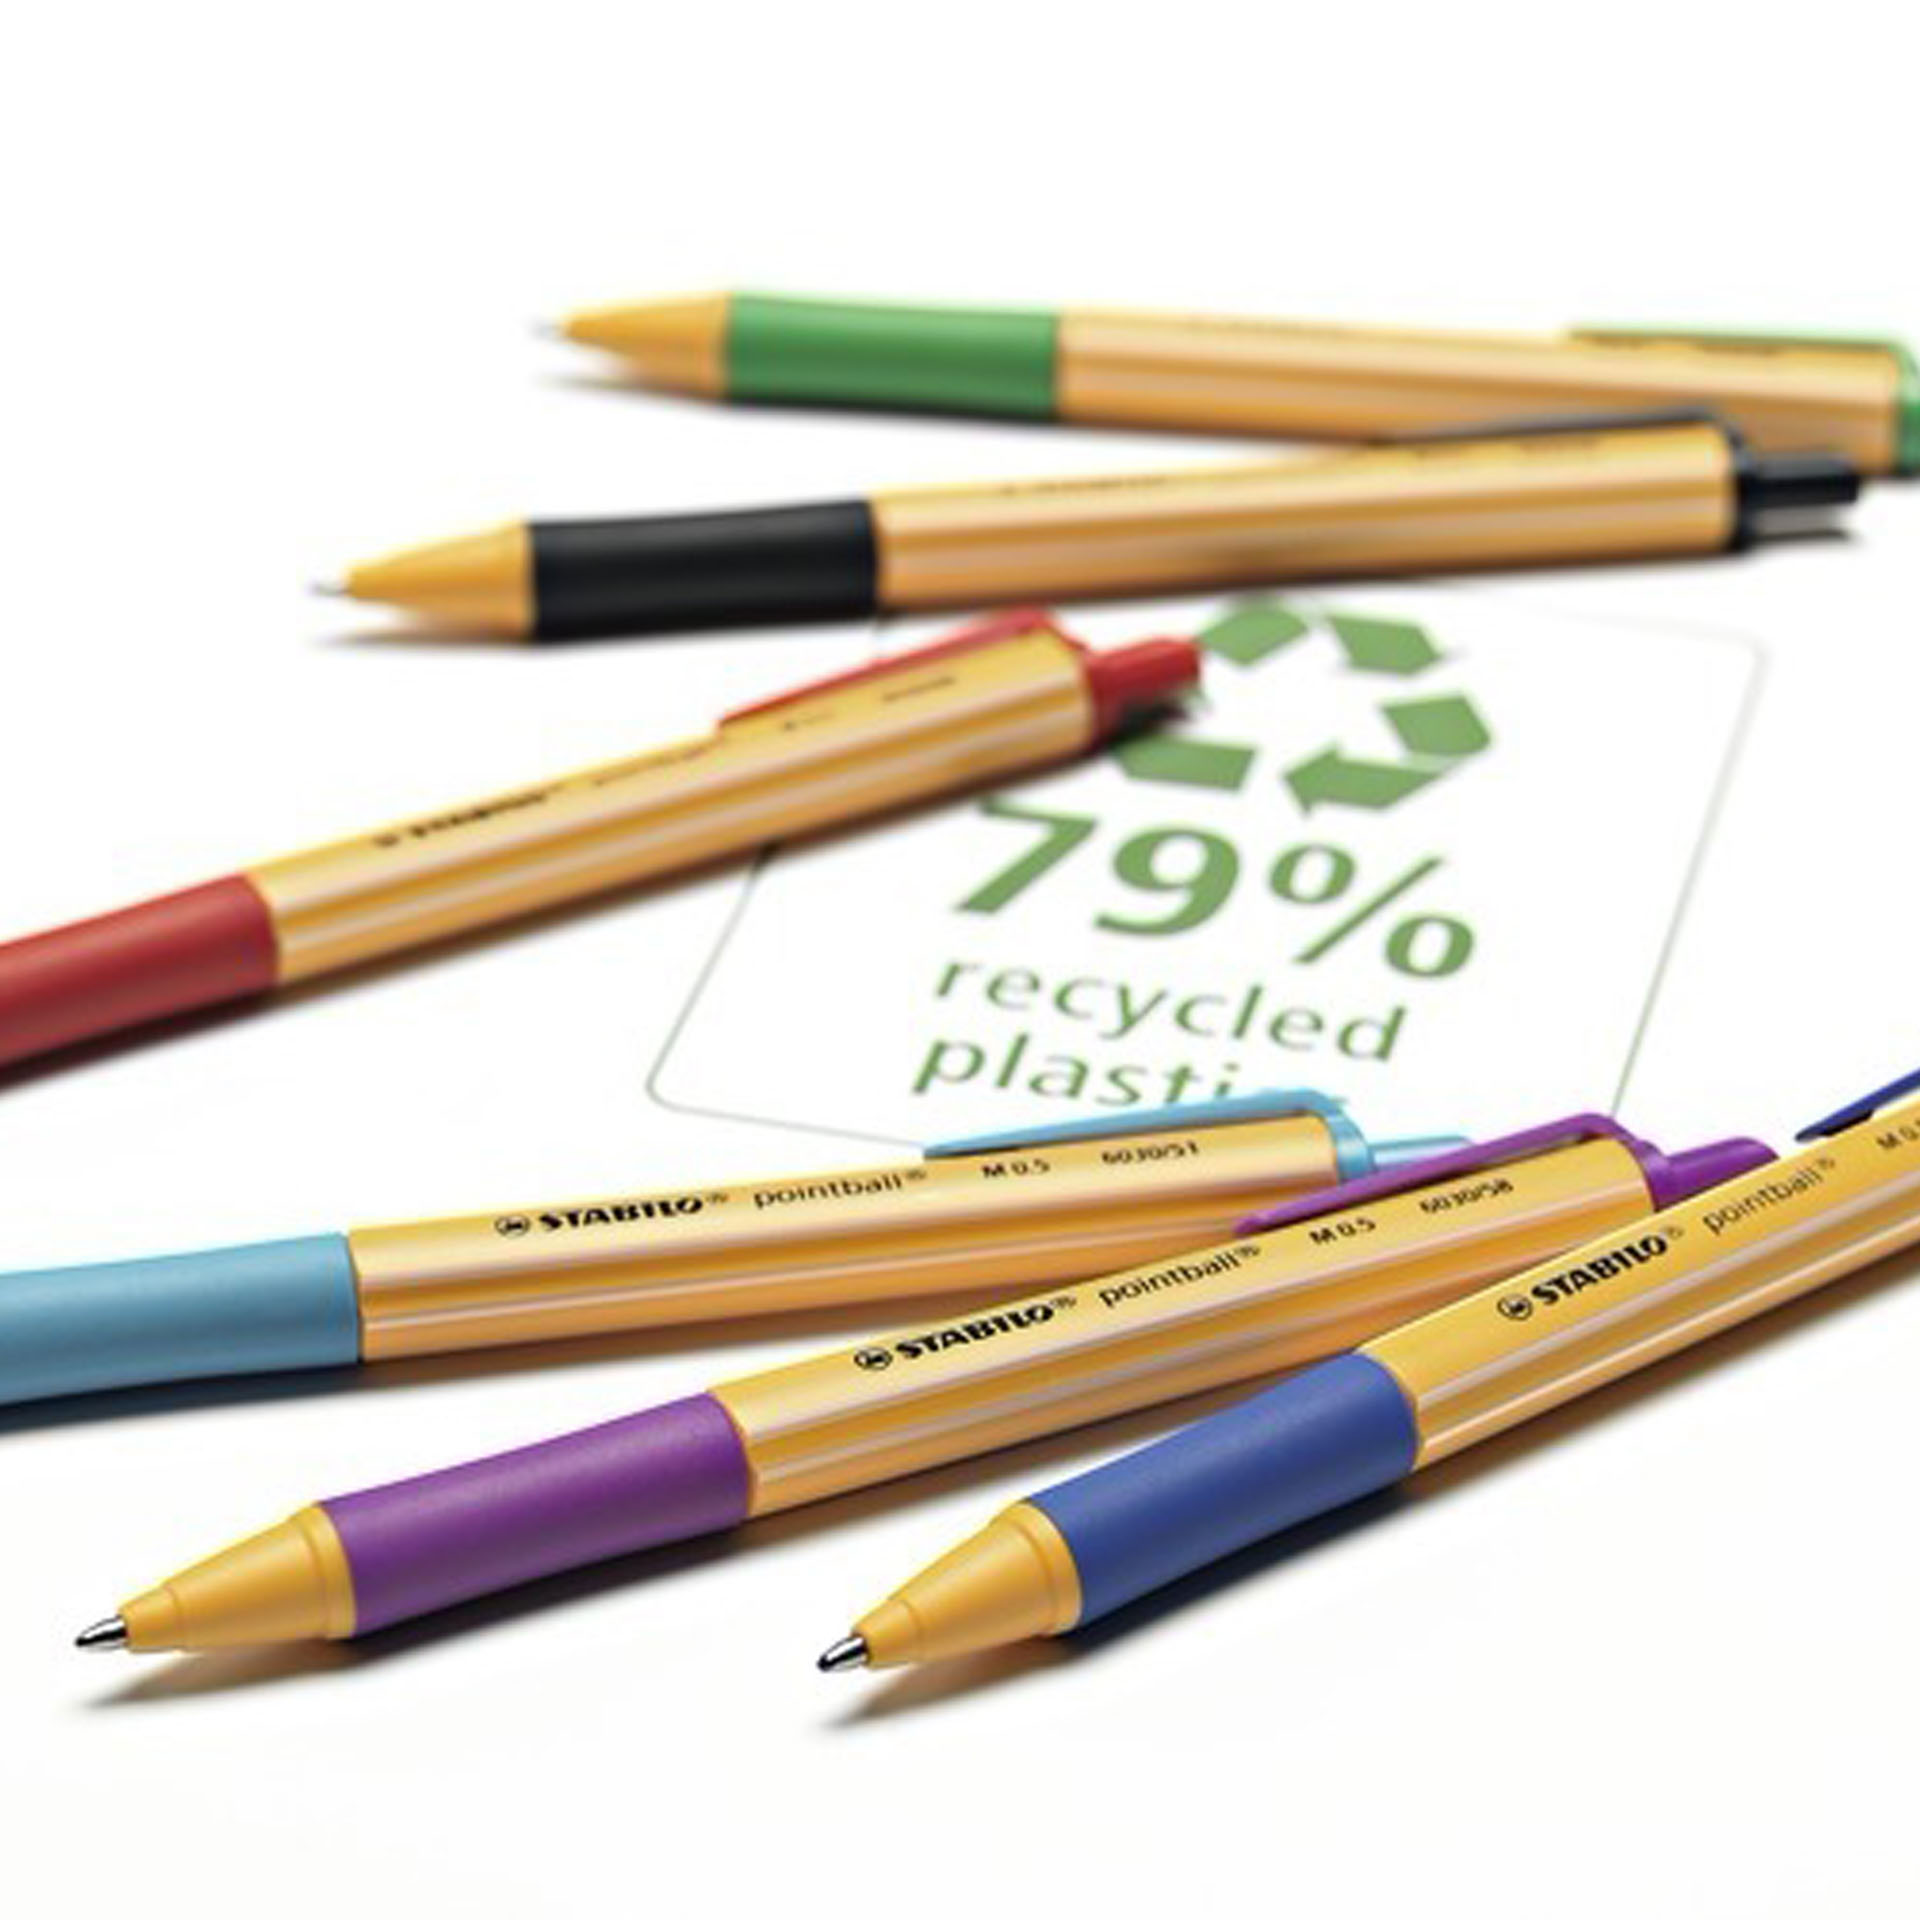 Penna a sfera Ecosostenibile - STABILO pointball - 79% Plastica Riciclata, , large